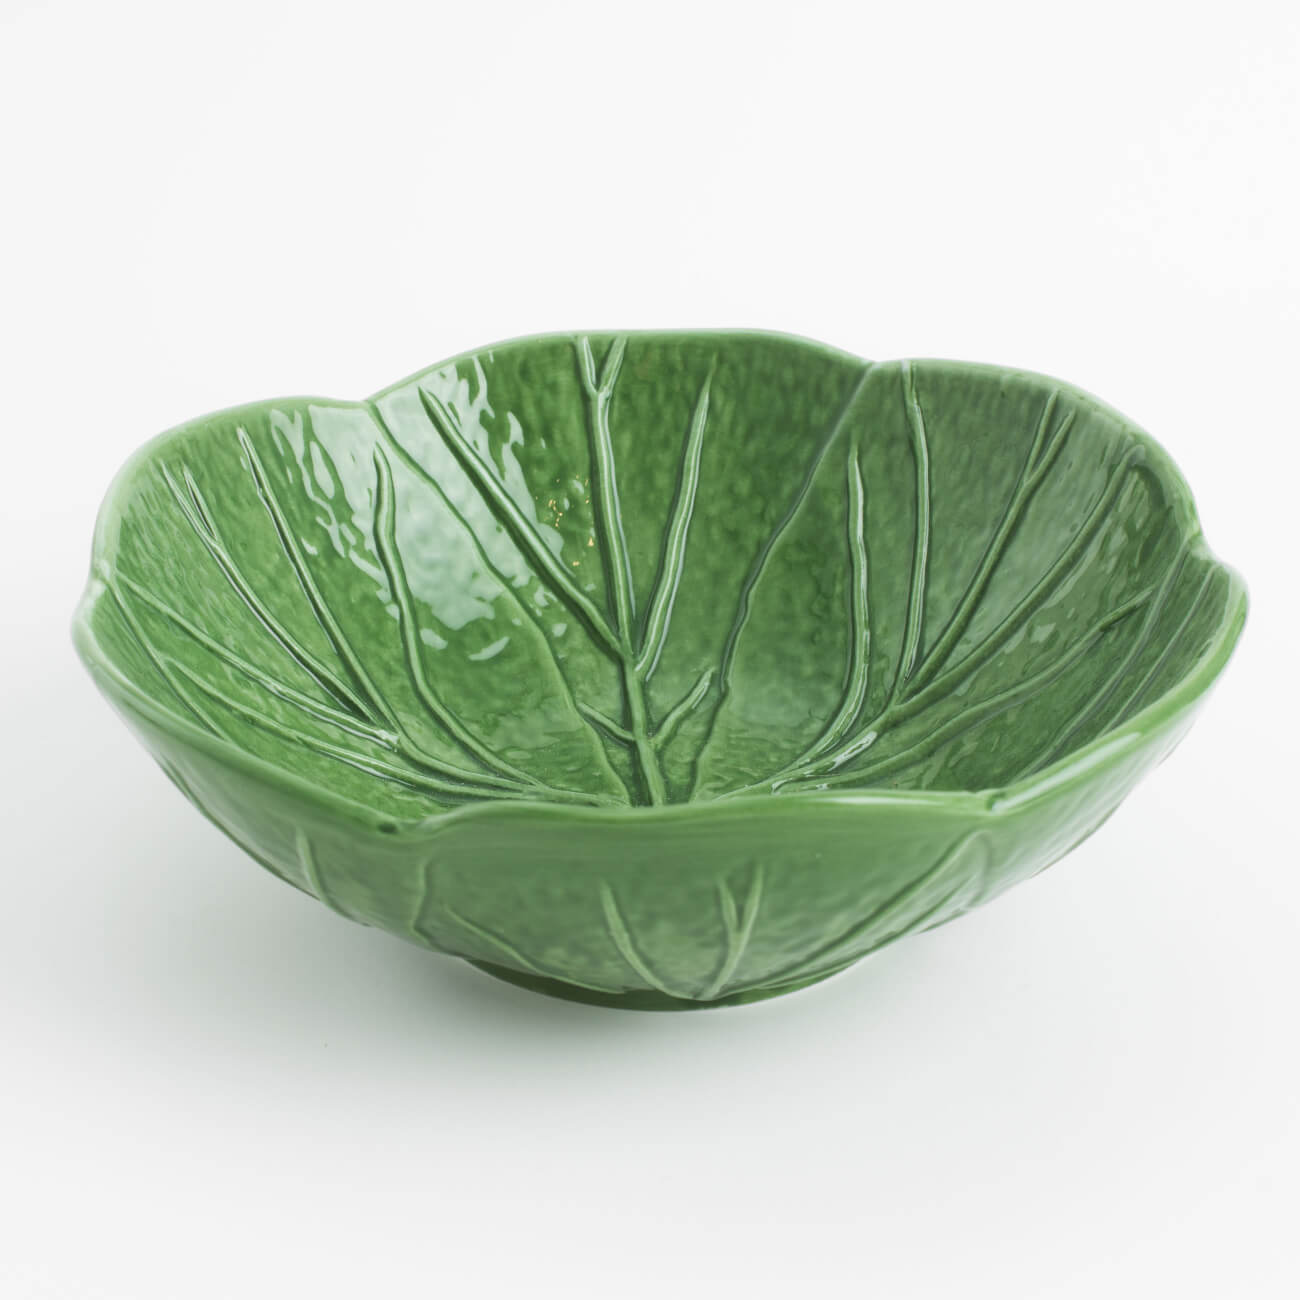 Салатник, 15х5 см, 350 мл, фарфор N, зеленый, Капуста, Cabbage тарелка steelite для пасты антуанетт 0 6 л 30 5 см зеленый фарфор 9019 c350